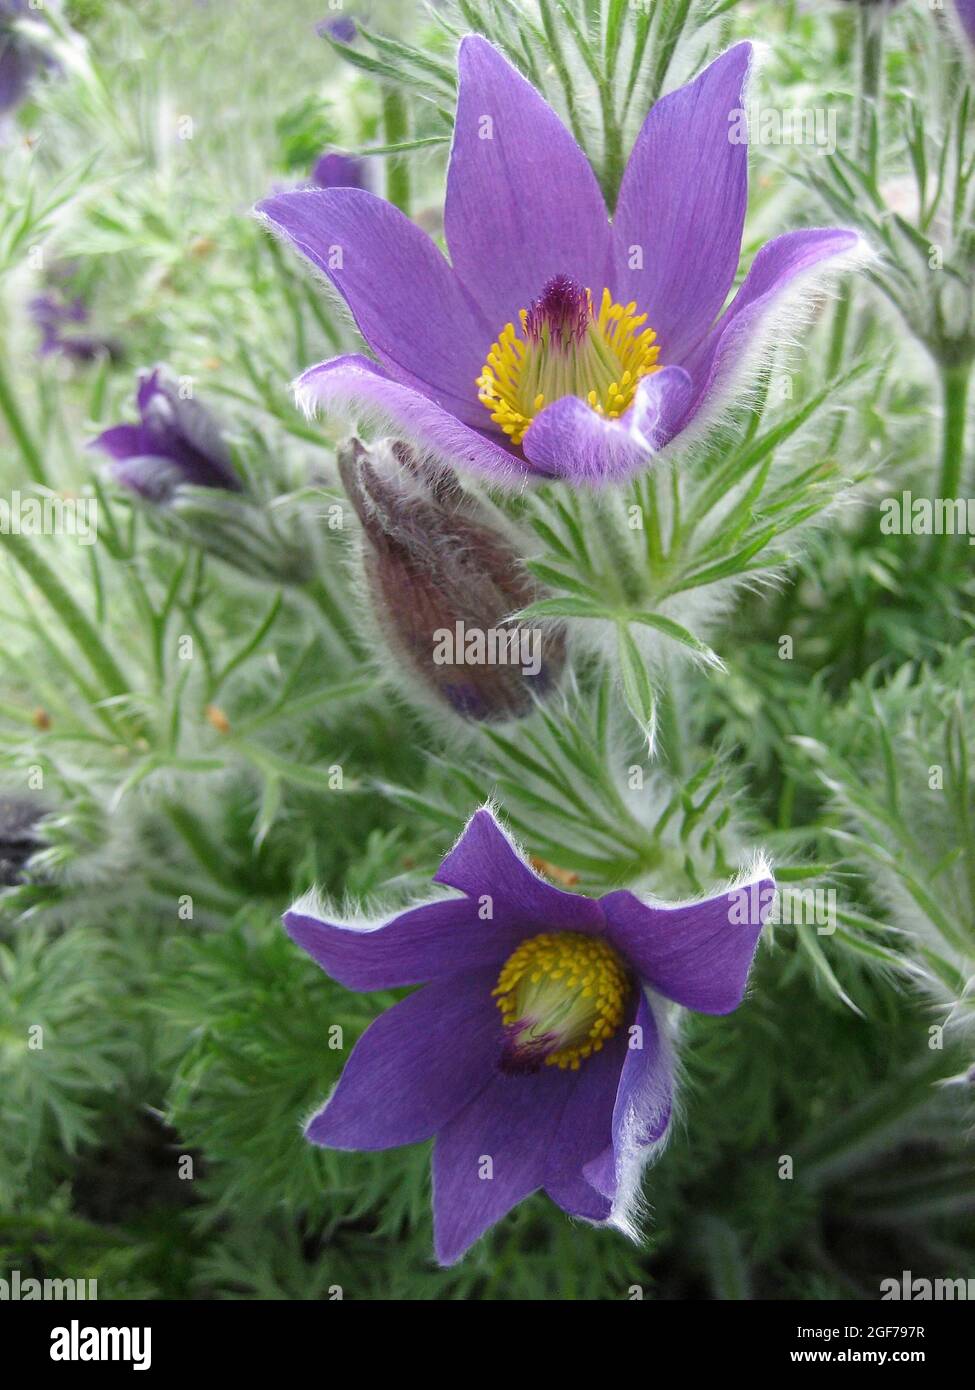 Fleur de pasque commune (Pulsatilla vulgaris) pourpre, fleur alpine, fleur de Pasque commune fleur de pasque Banque D'Images